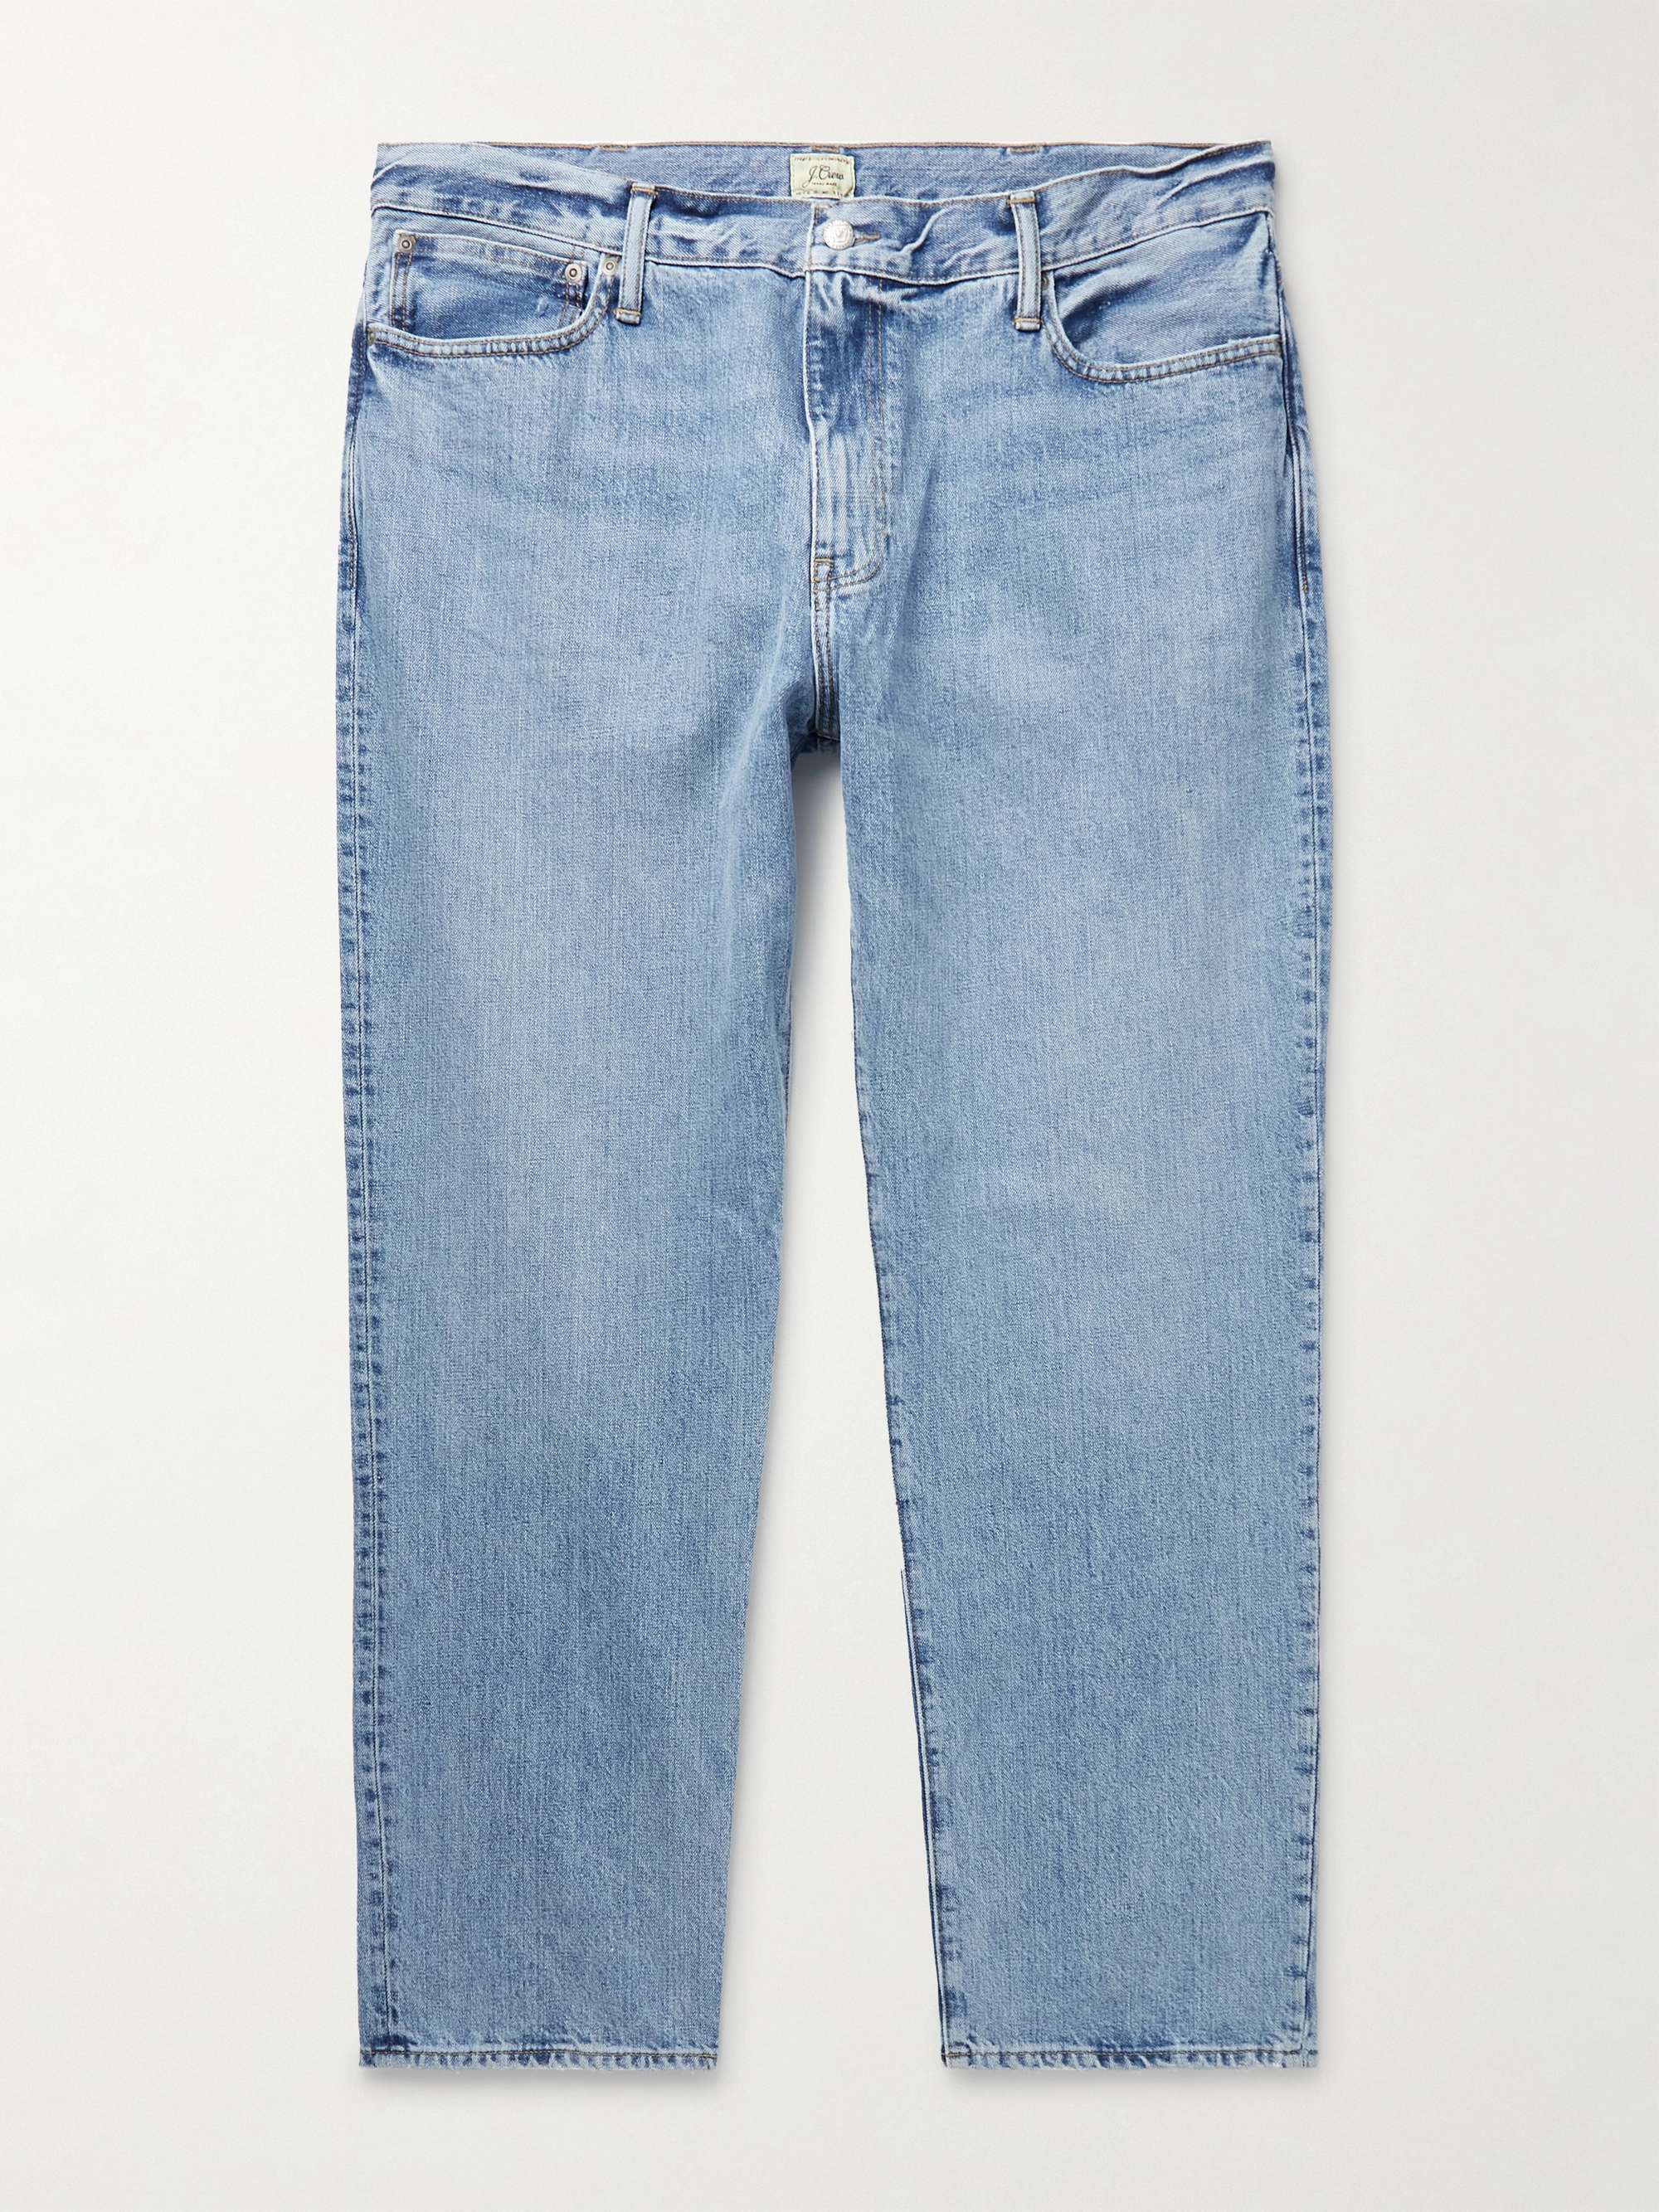 J.CREW Straight-Leg Jeans for Men | MR PORTER